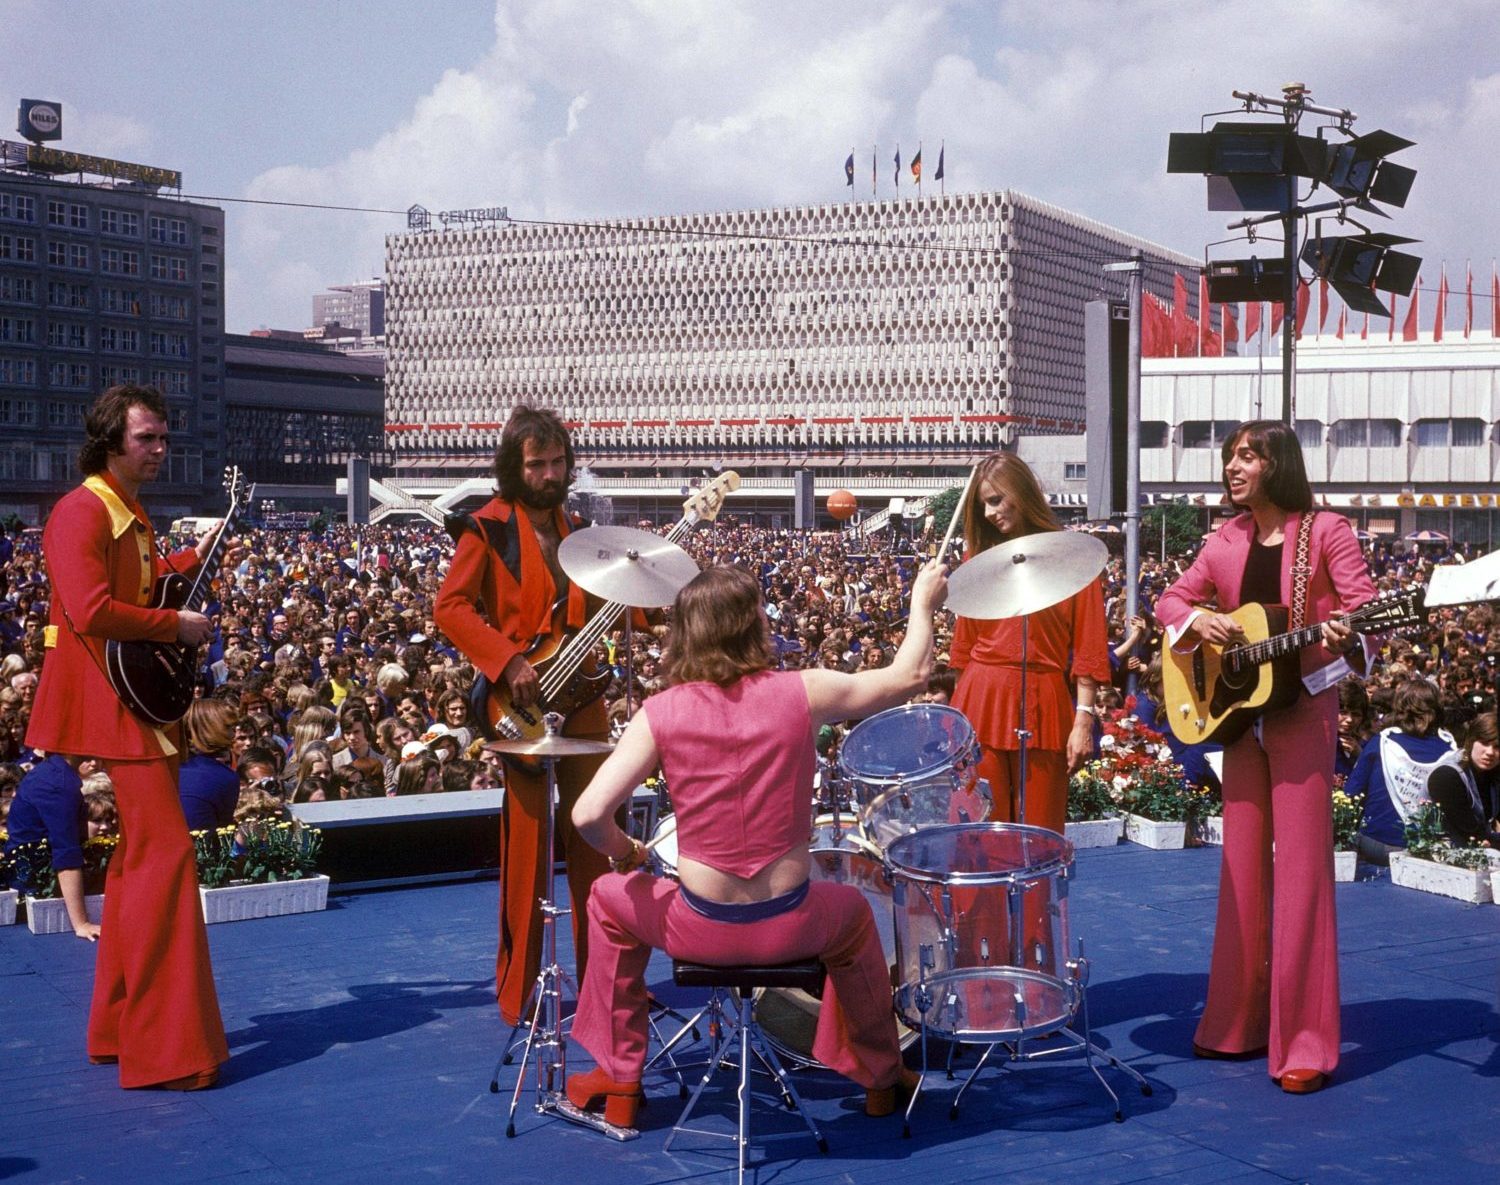 Gruppe WIR bei einem Konzert auf dem Berliner Alexanderplatz anlässlich der Weltfestspiele der Jugend und Studenten, 1973. Foto: Imago/Gueffroy